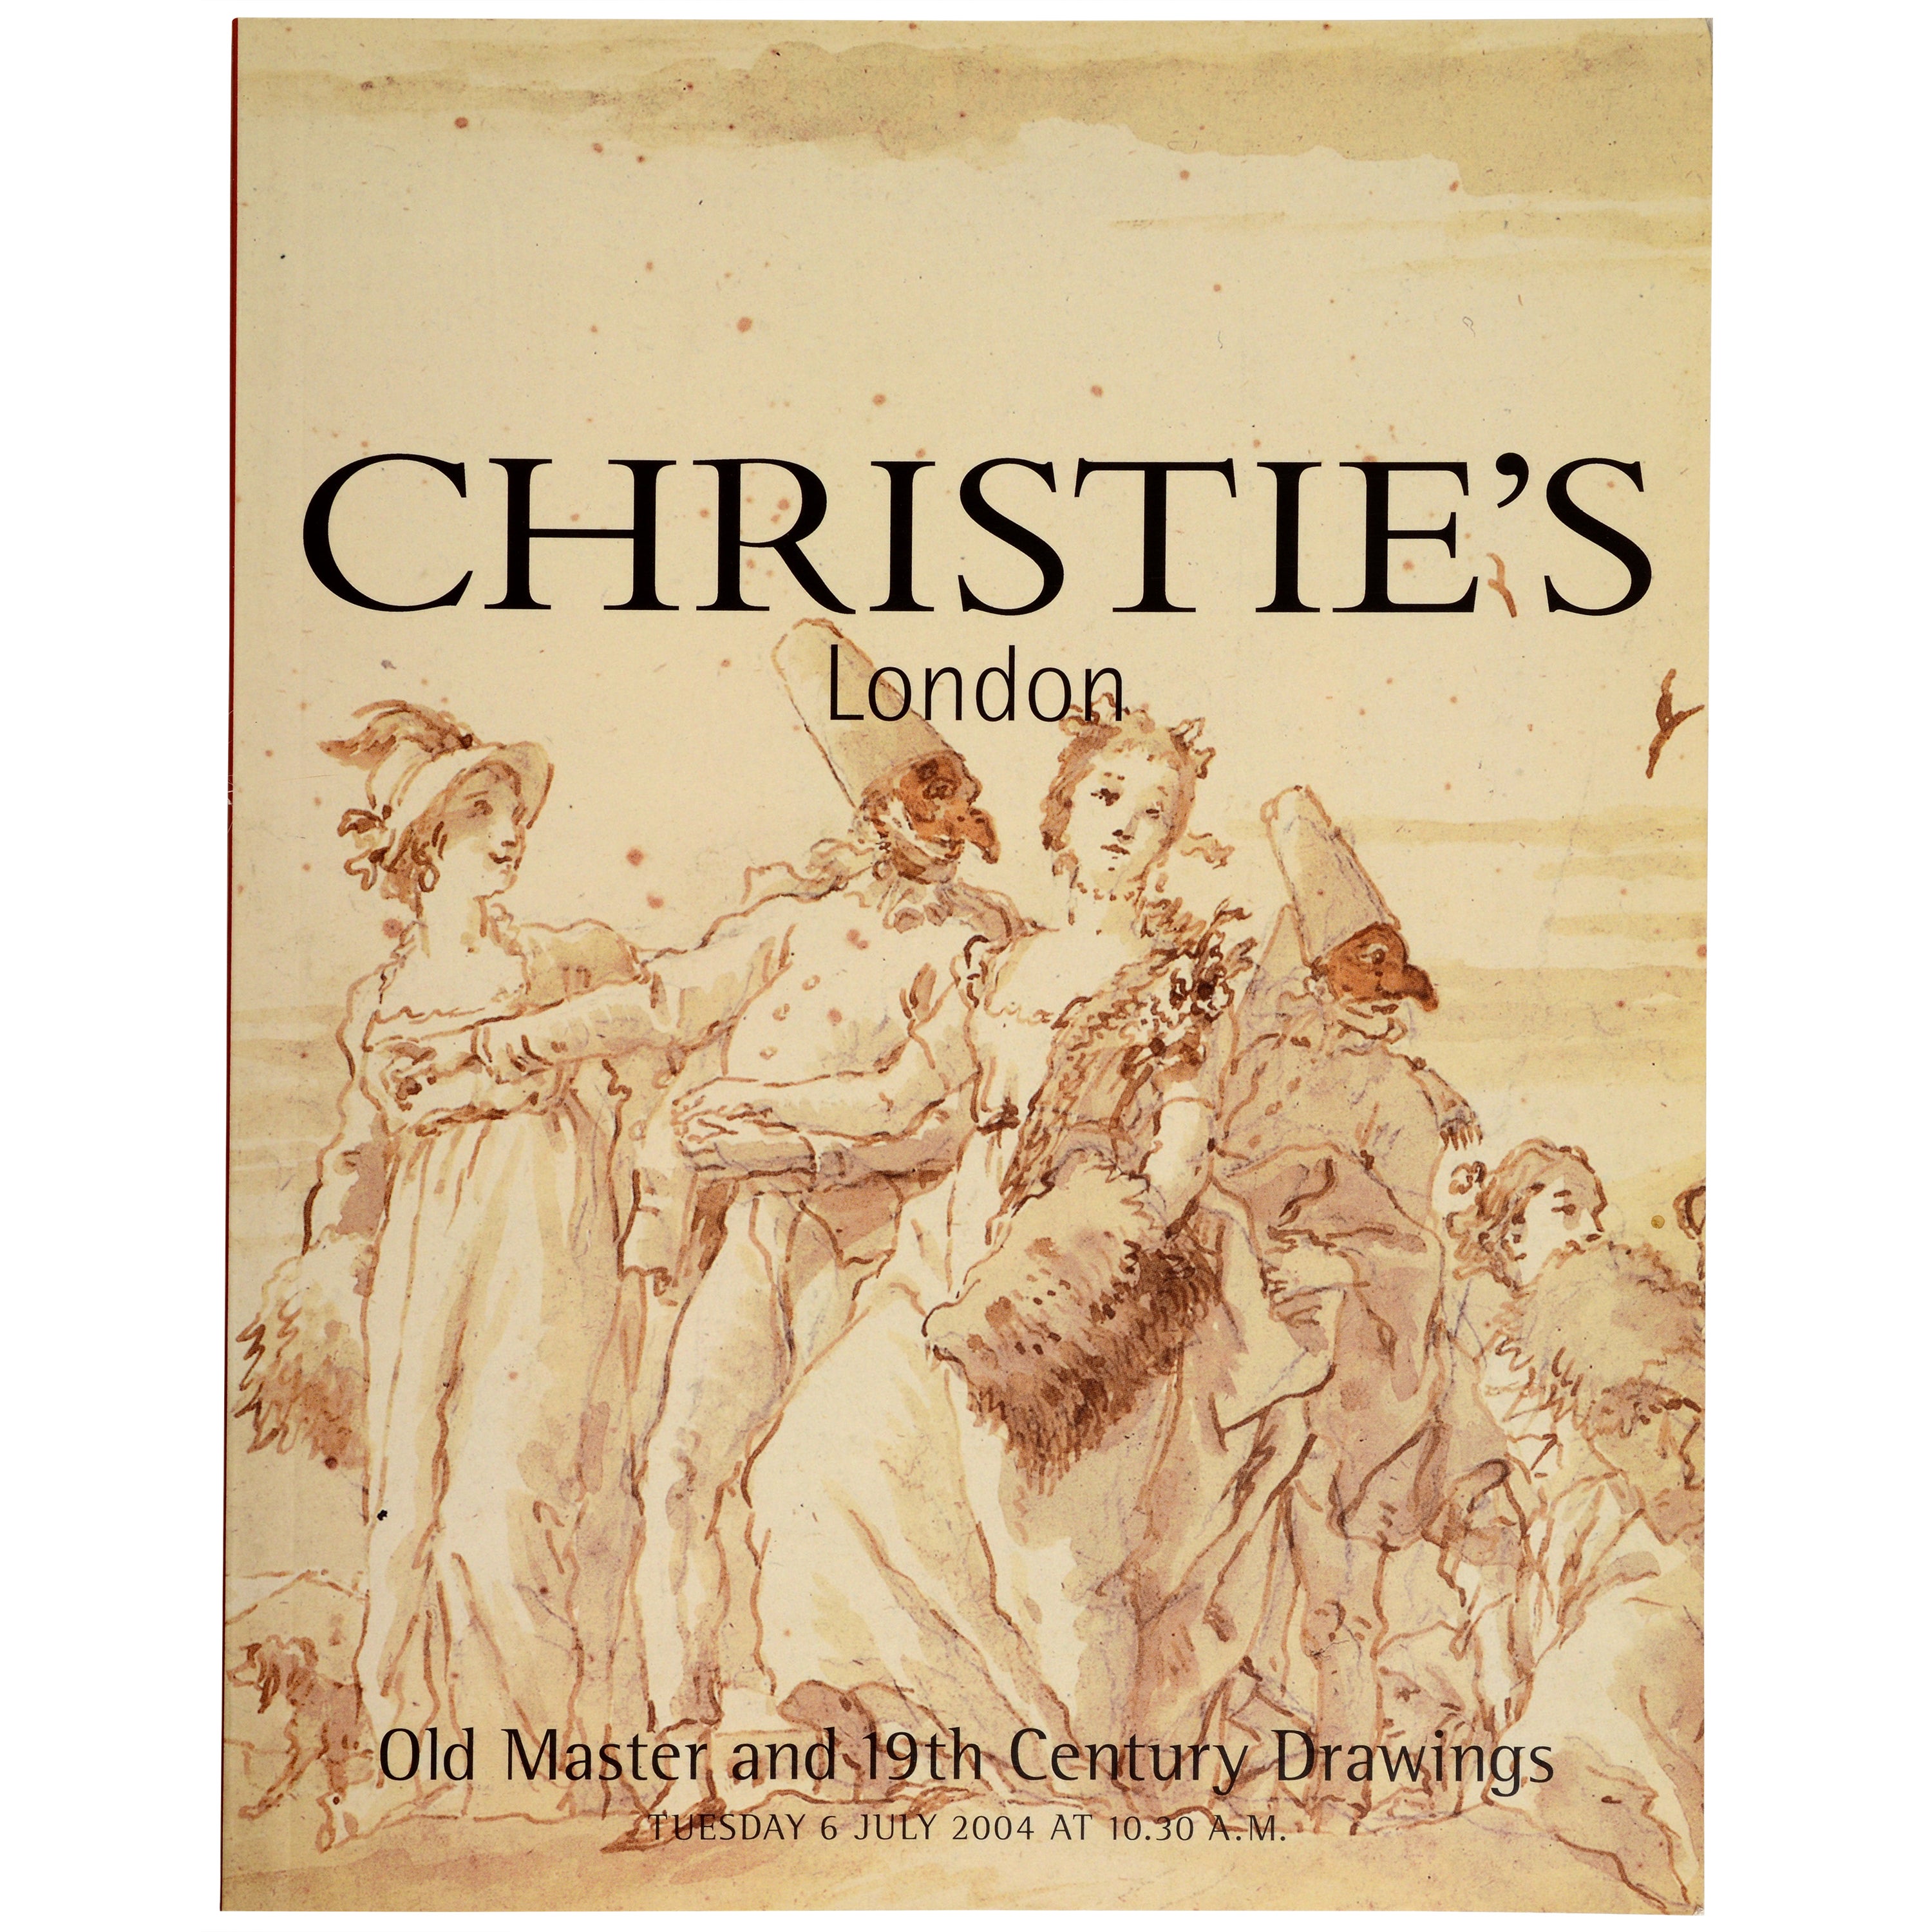 Christies Juli 2004 Altmeister und Zeichnungen des 19. Jahrhunderts, 1. Auflage, Christies